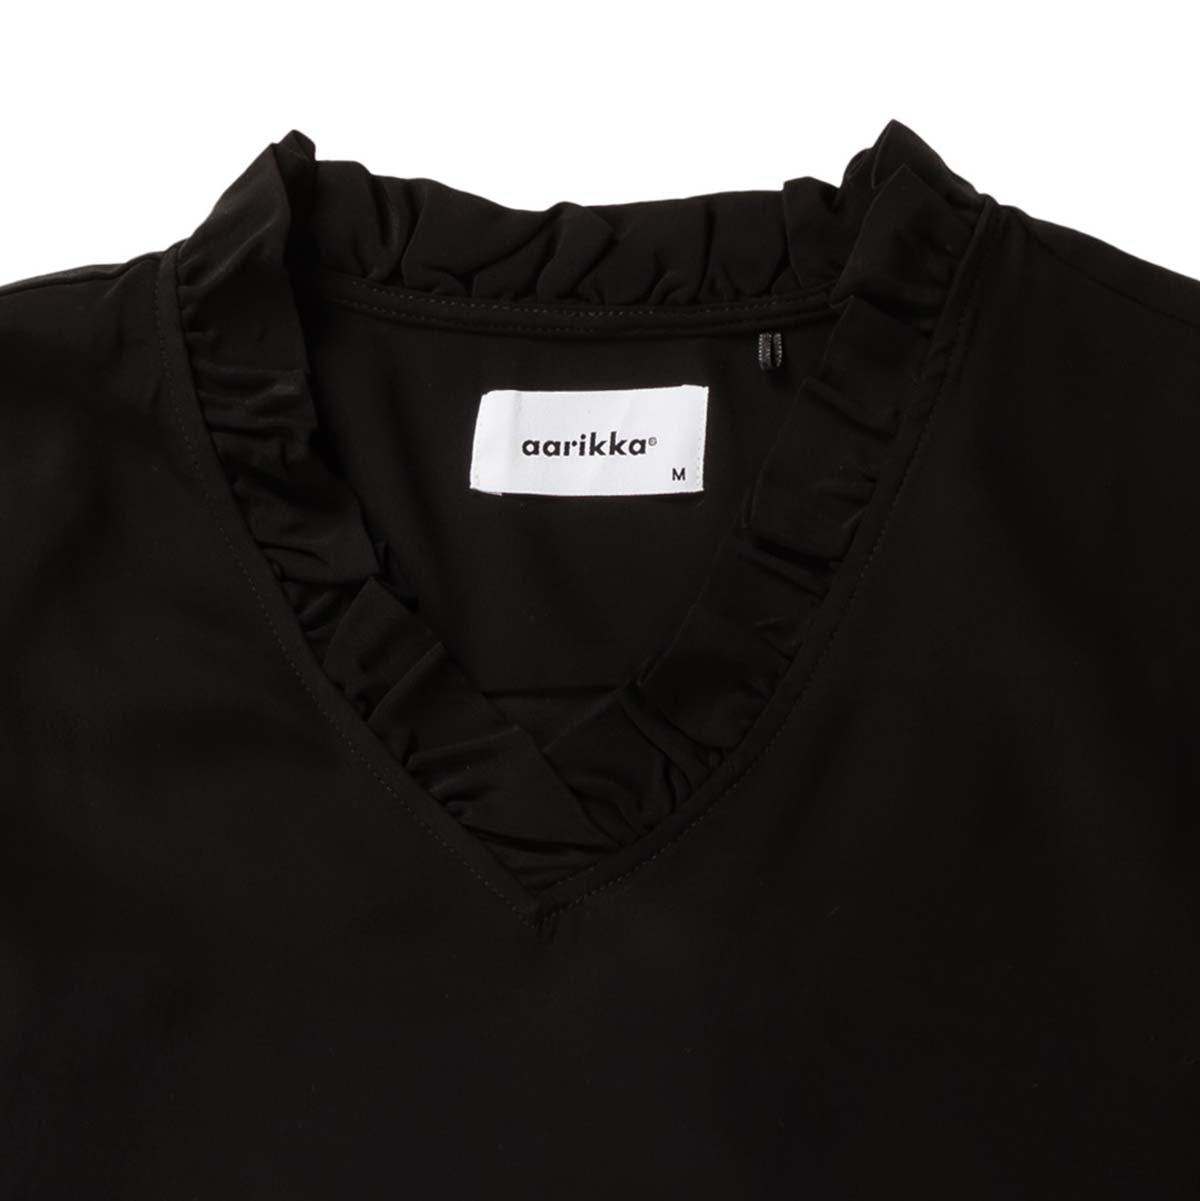 Nea blouse, black